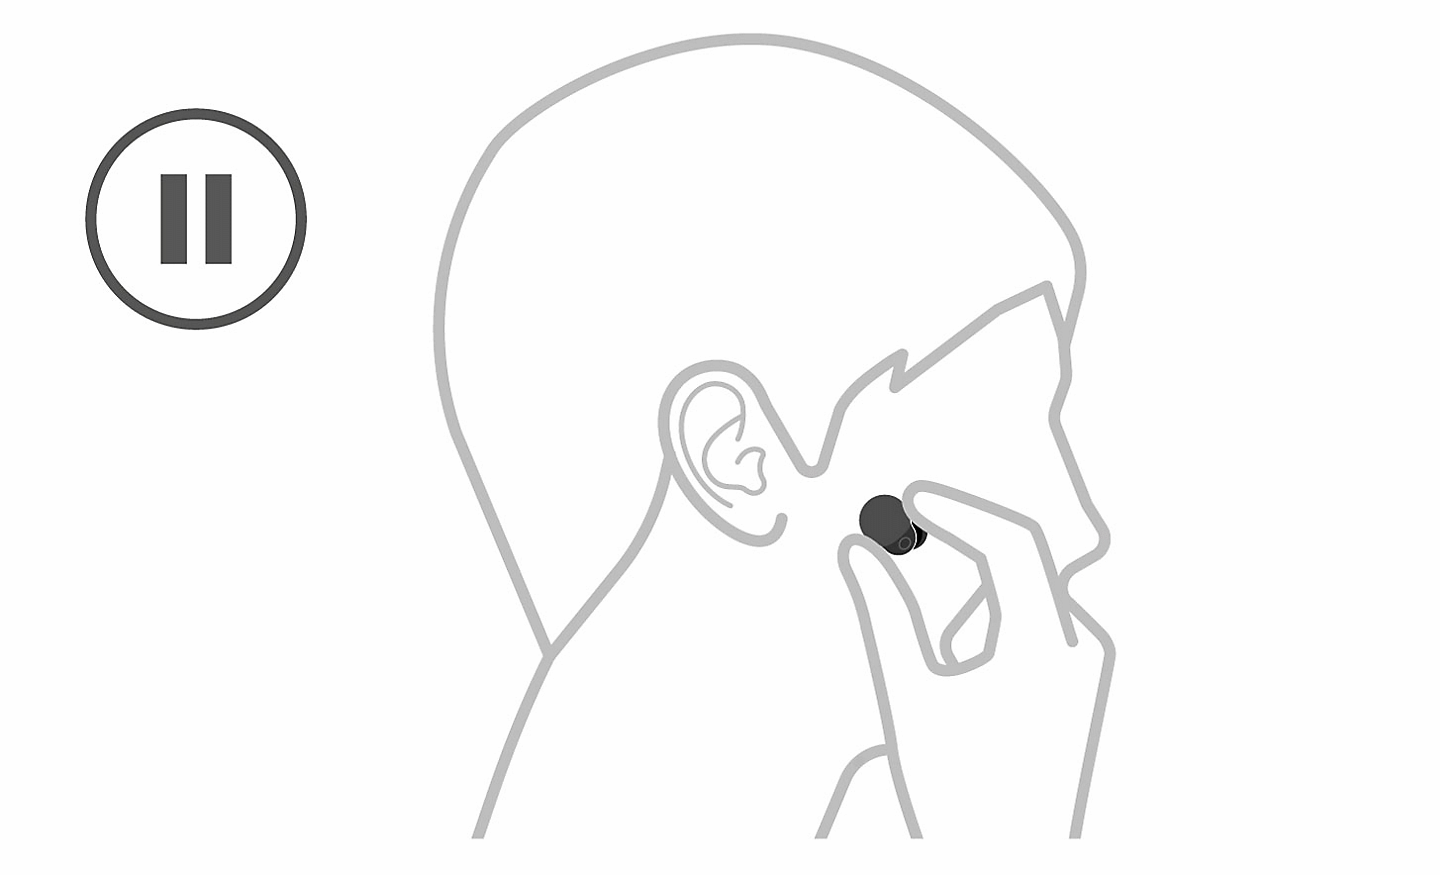 Kresba hlavy, vľavo je ikona pozastavenia a ruka, ktorá slúchadlo vyberá do ucha